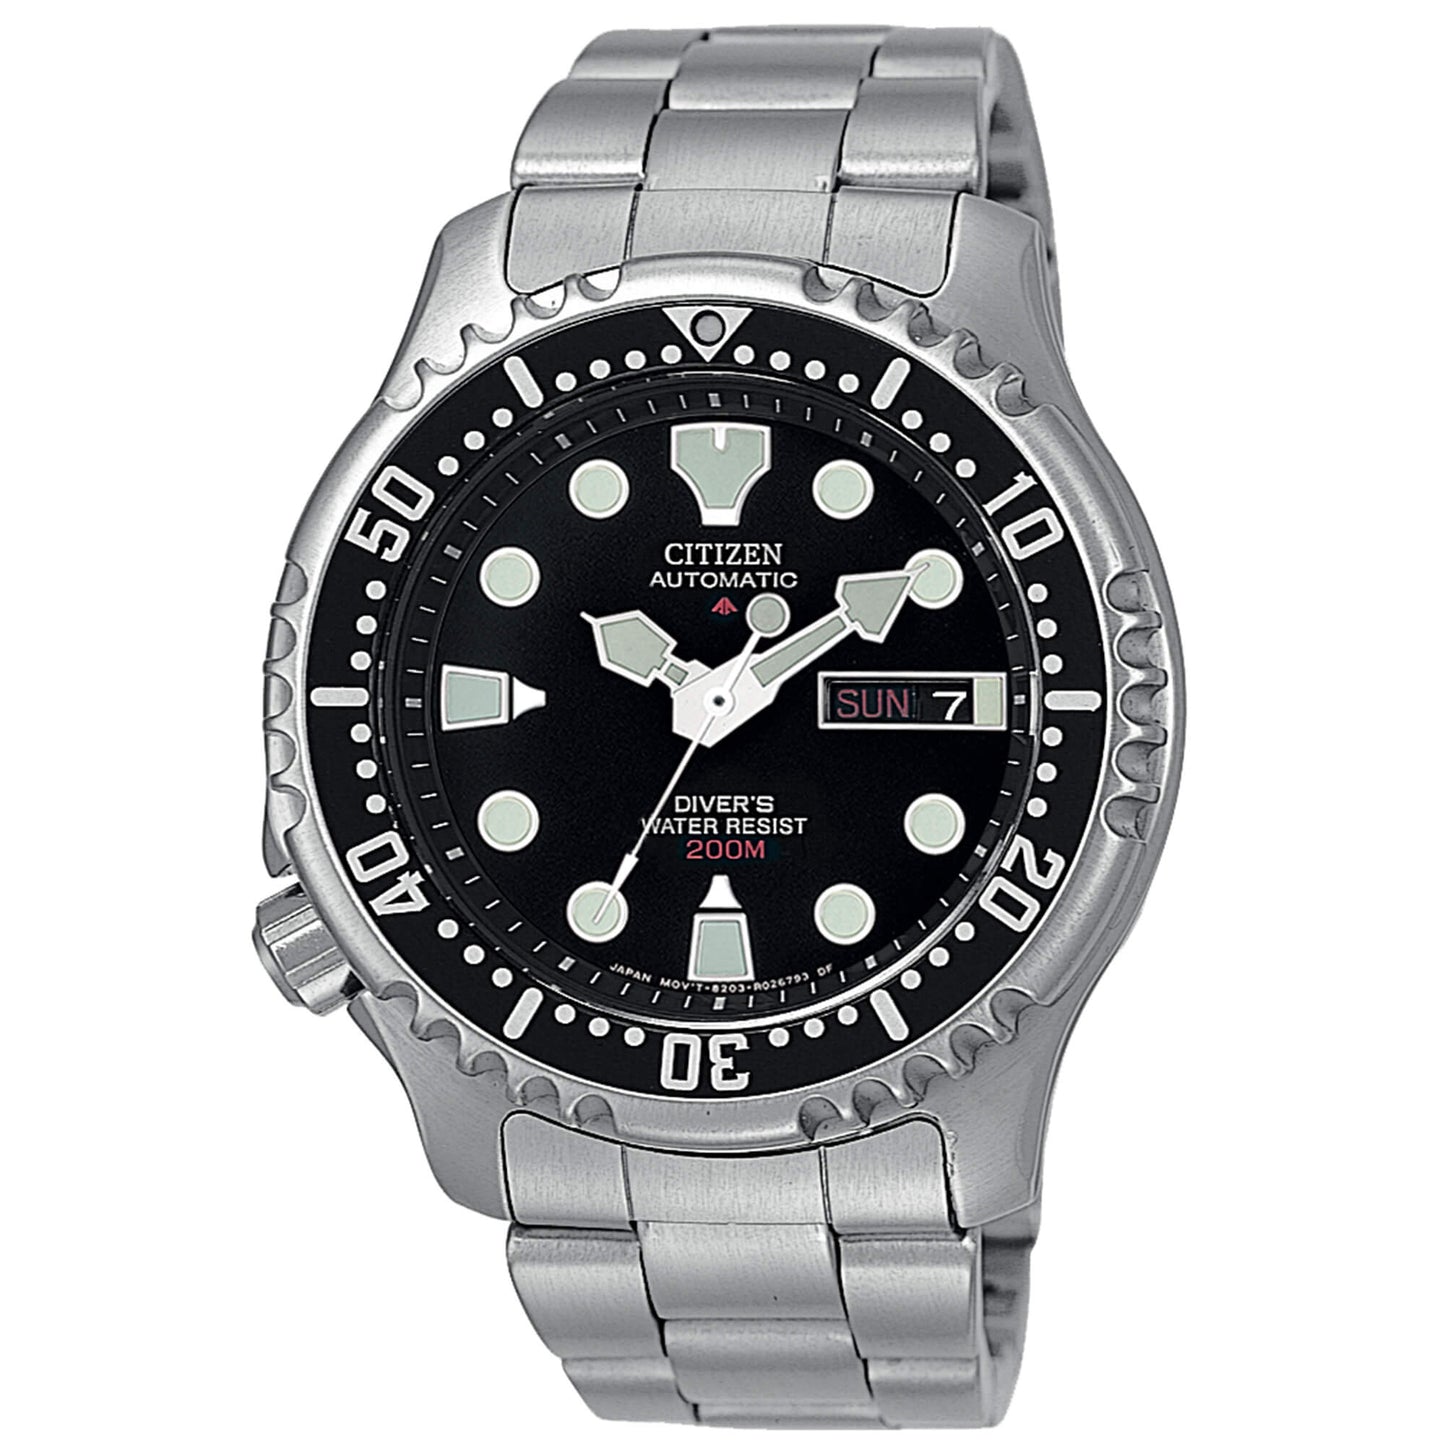 Citizen Diver's Automatic 200 m men's watch